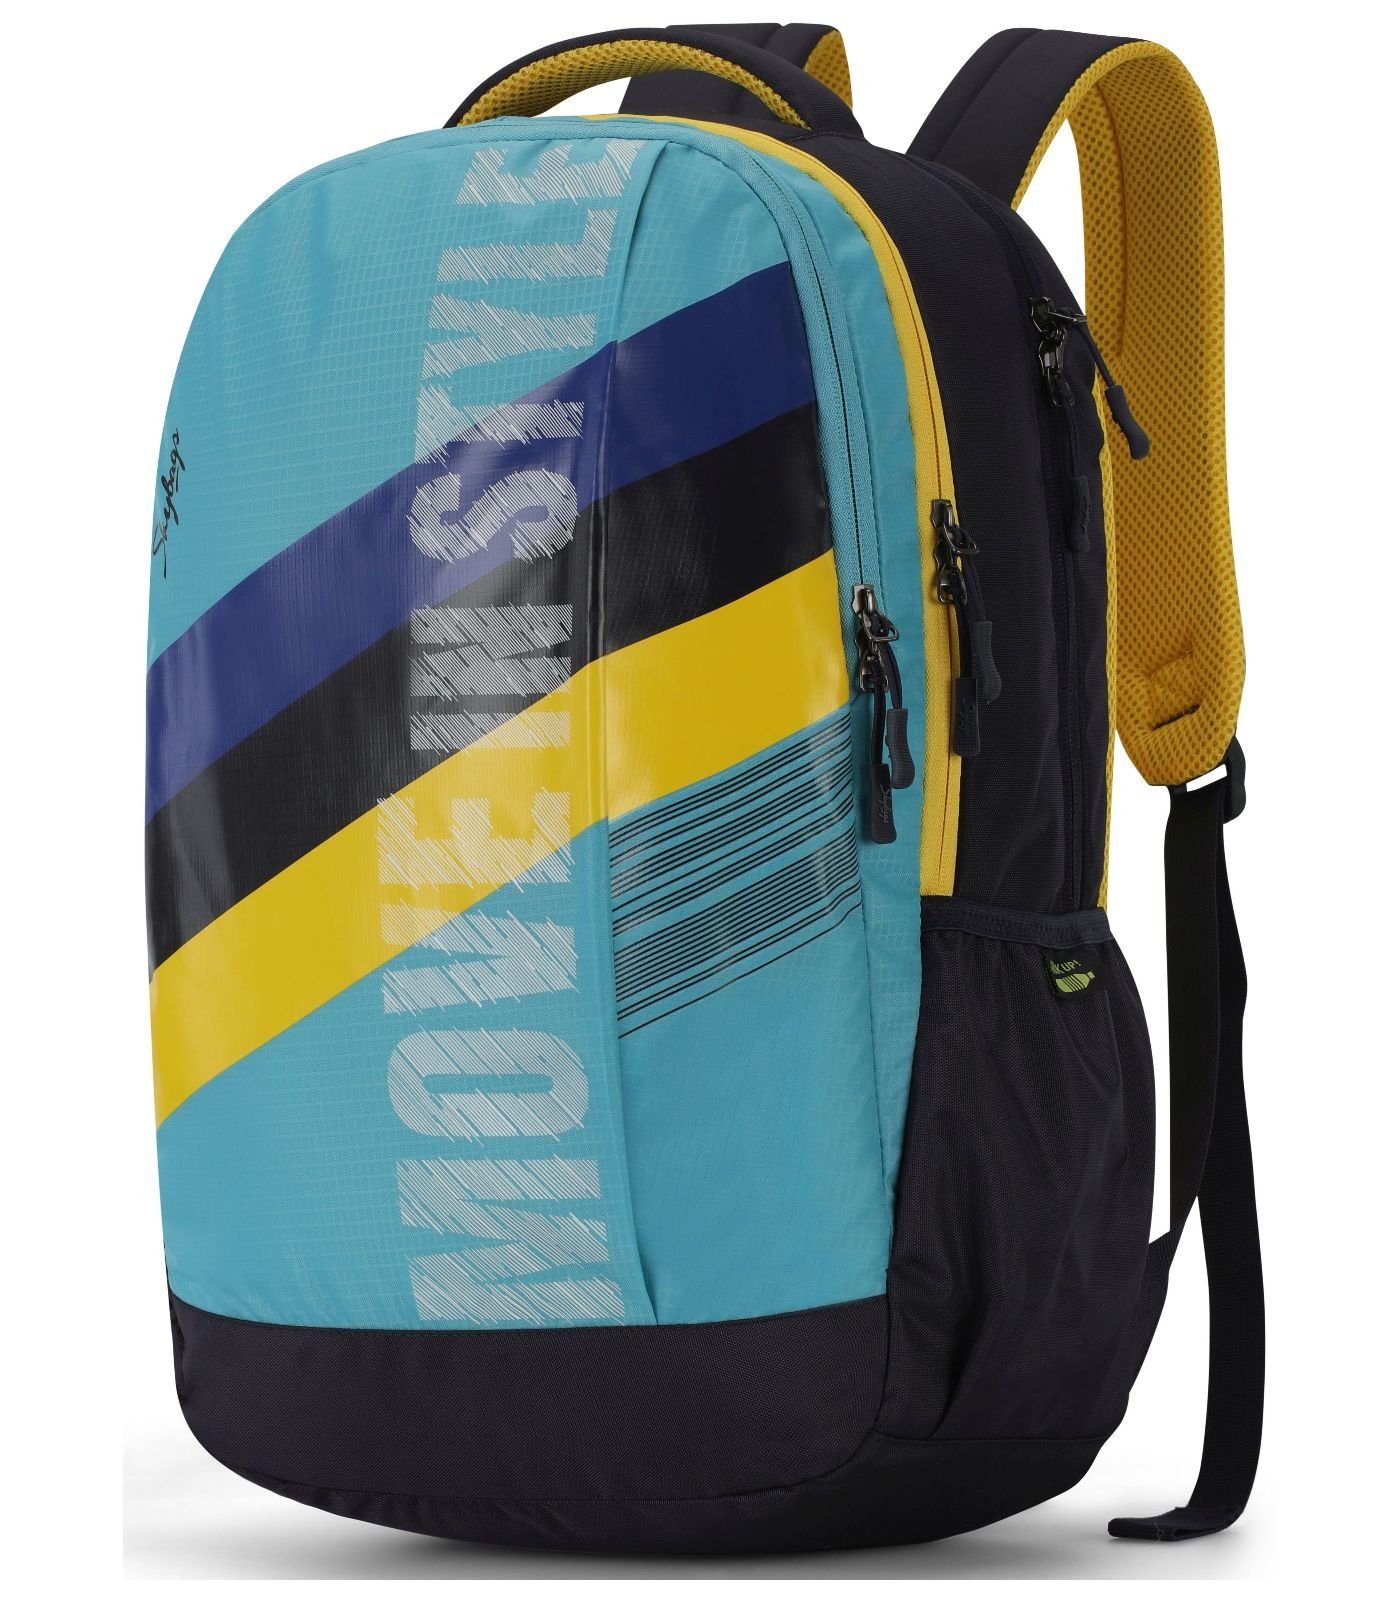 Textil Taschen Rucksack Skybags